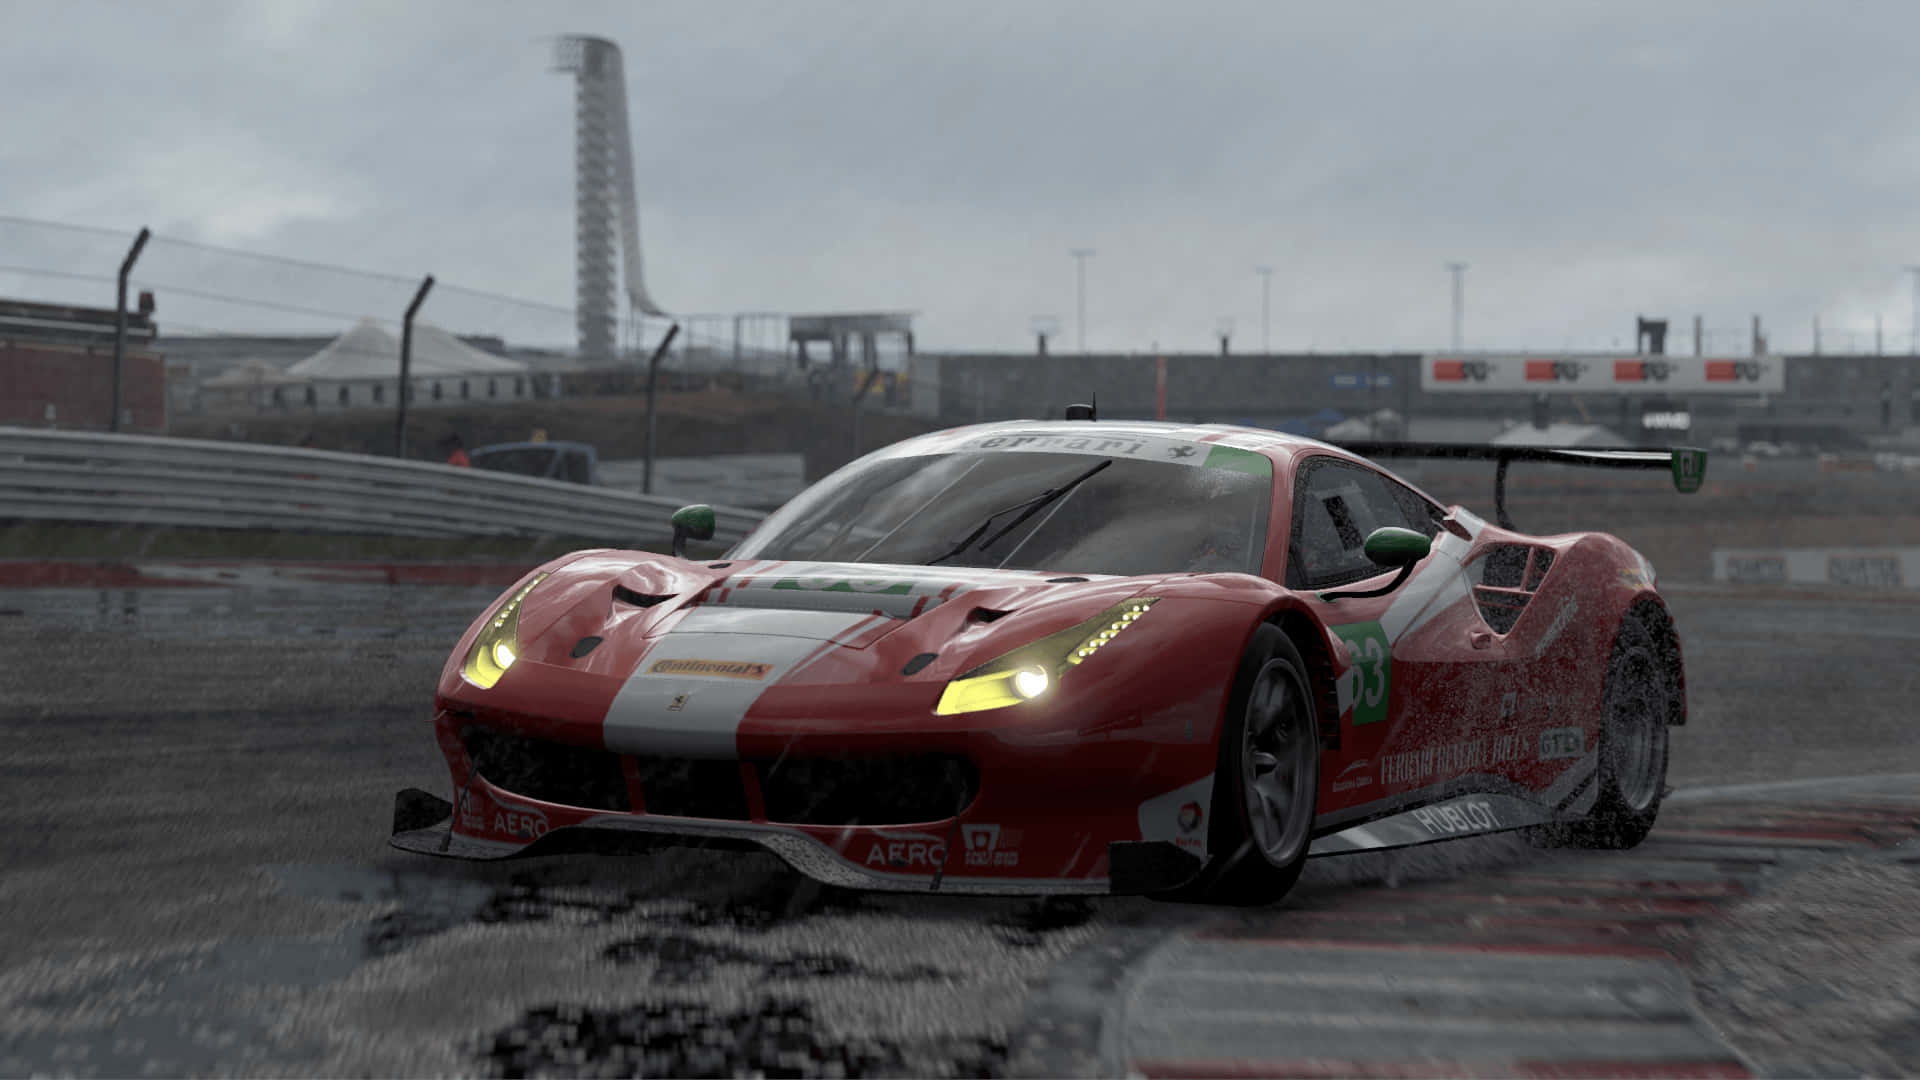 Fondode Pantalla Hd De Project Cars 2 Ferrari 488 Gt3